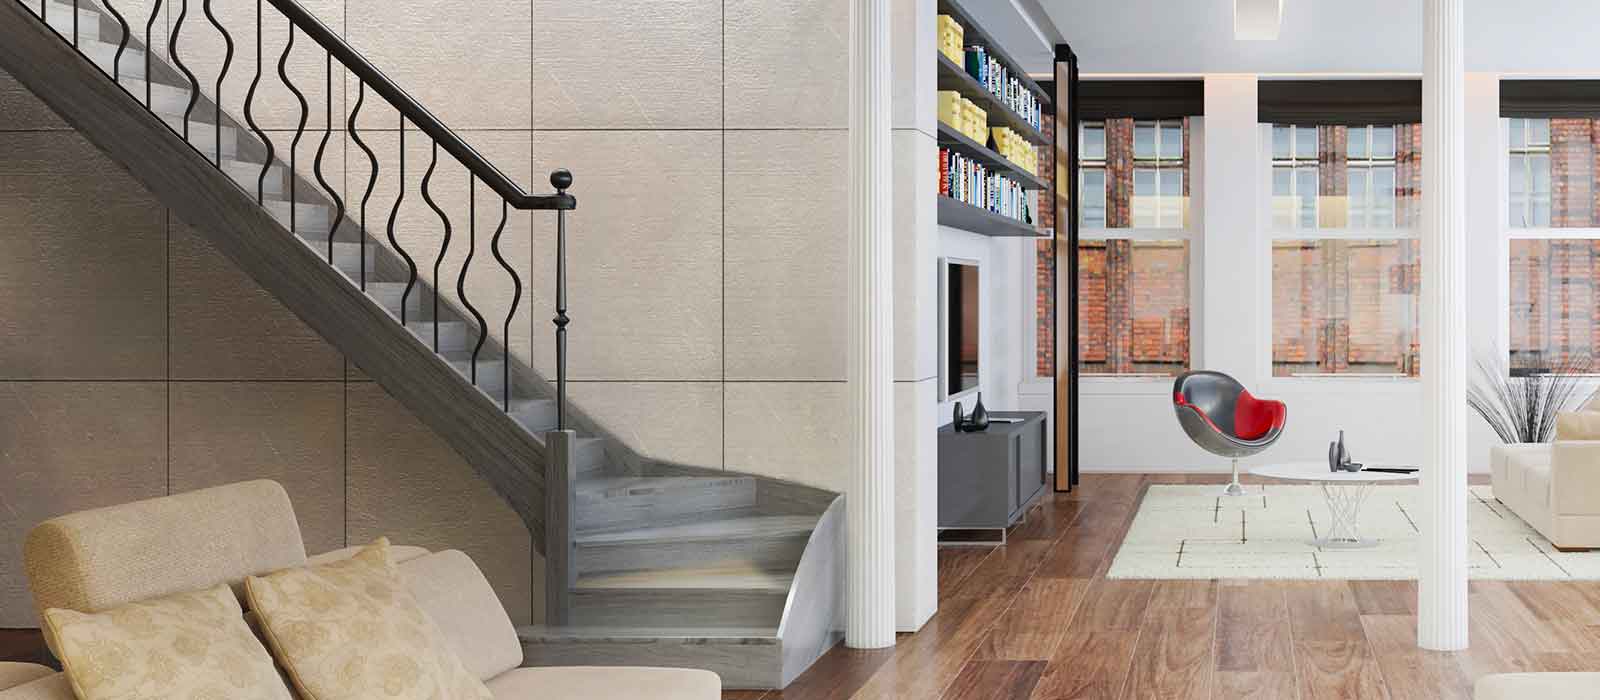 escalier en bois avec rampe d escalier en fer forgé design